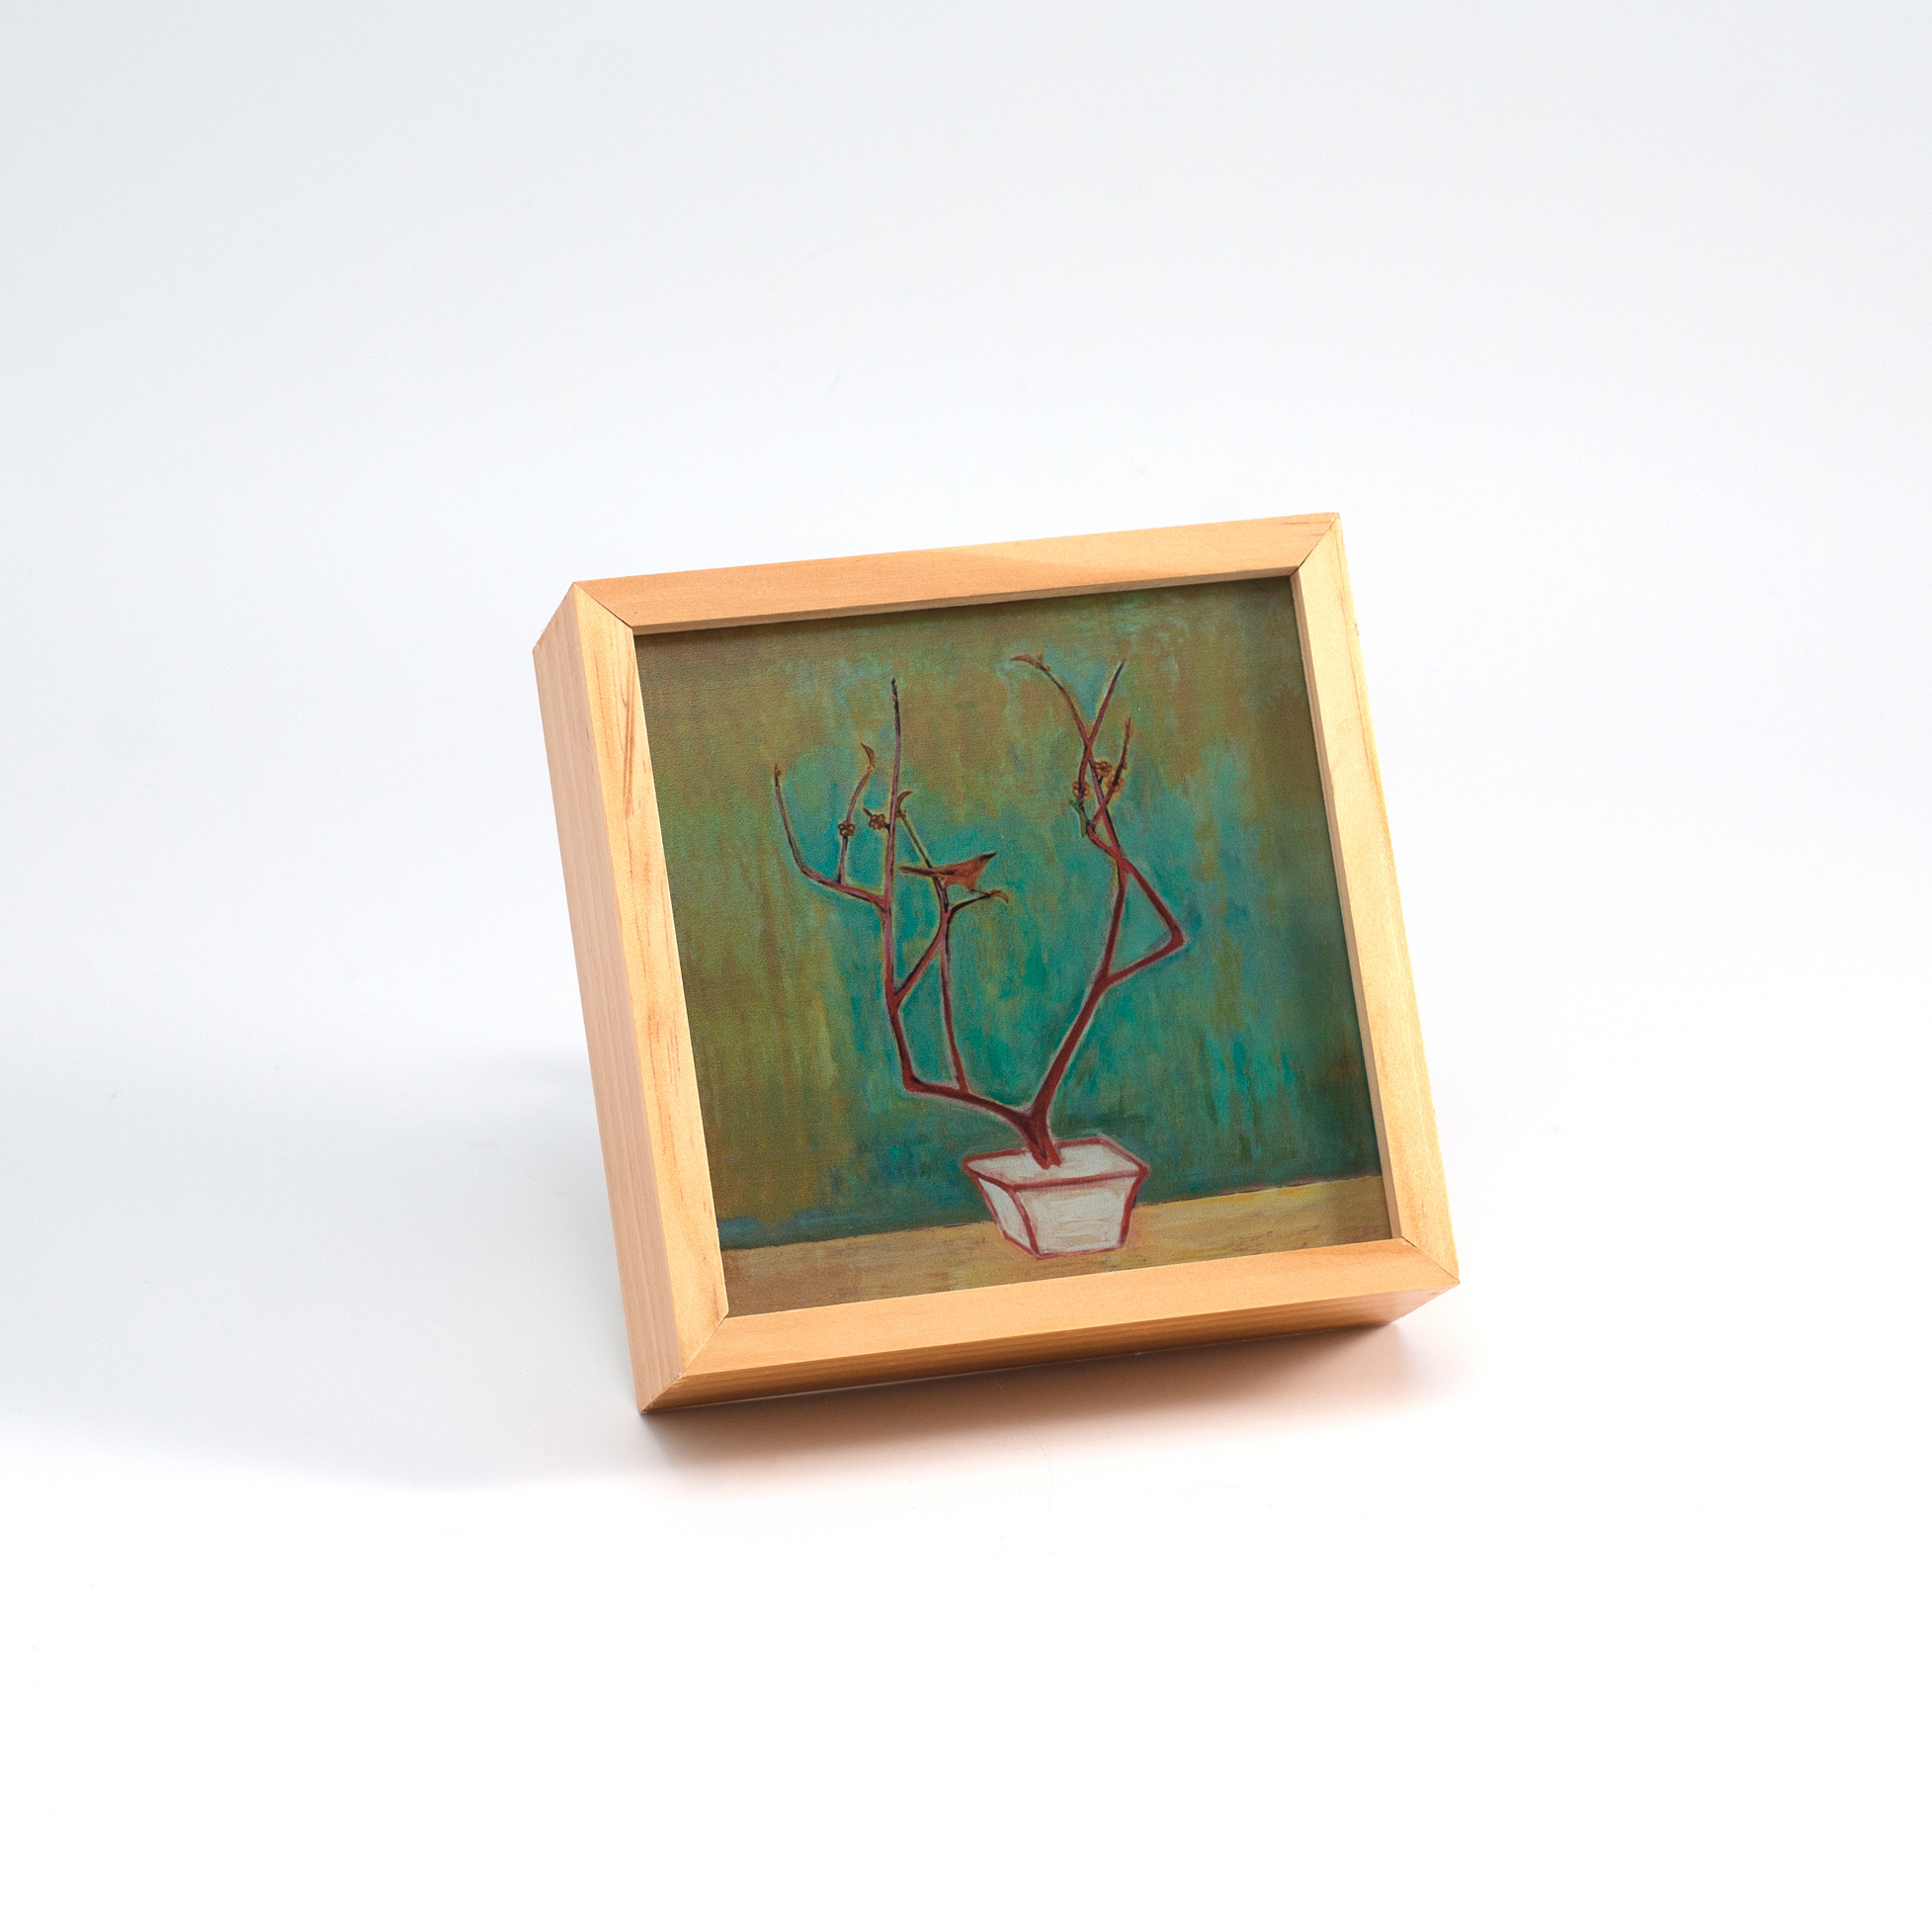 常玉相框燈-梅 Plum Blossom Wooden Light Box 